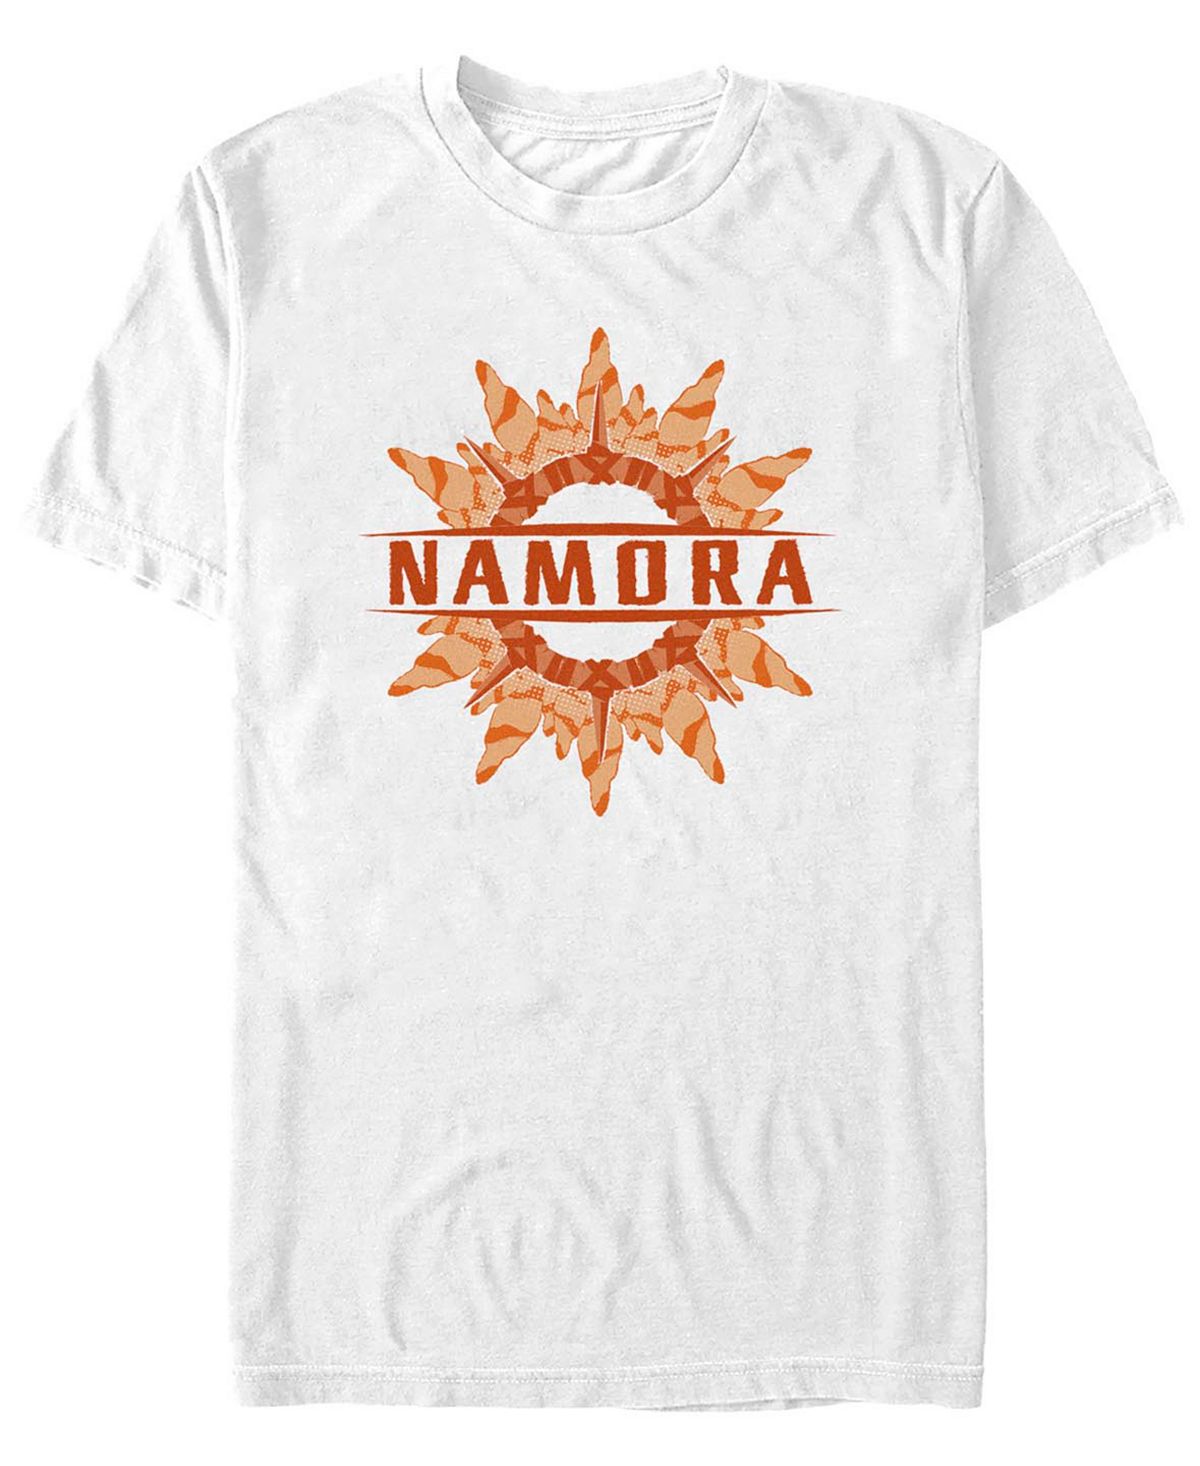 Мужская футболка с коротким рукавом namora coral ring Fifth Sun, белый сборник подарочный комплект комиксов шедевры marvel